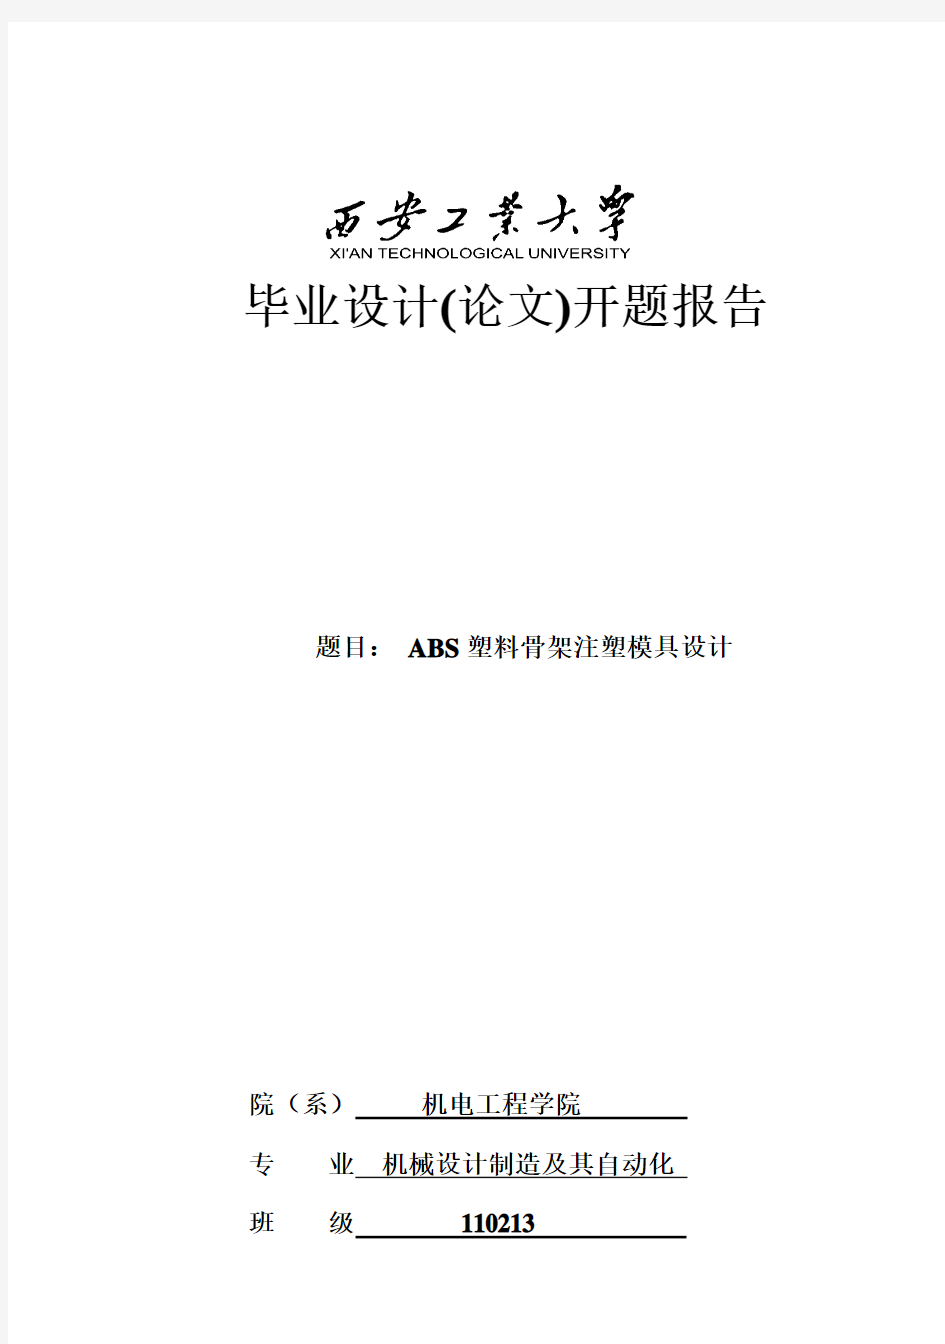 (完整版)西安工业大学_毕业设计(论文)开题报告